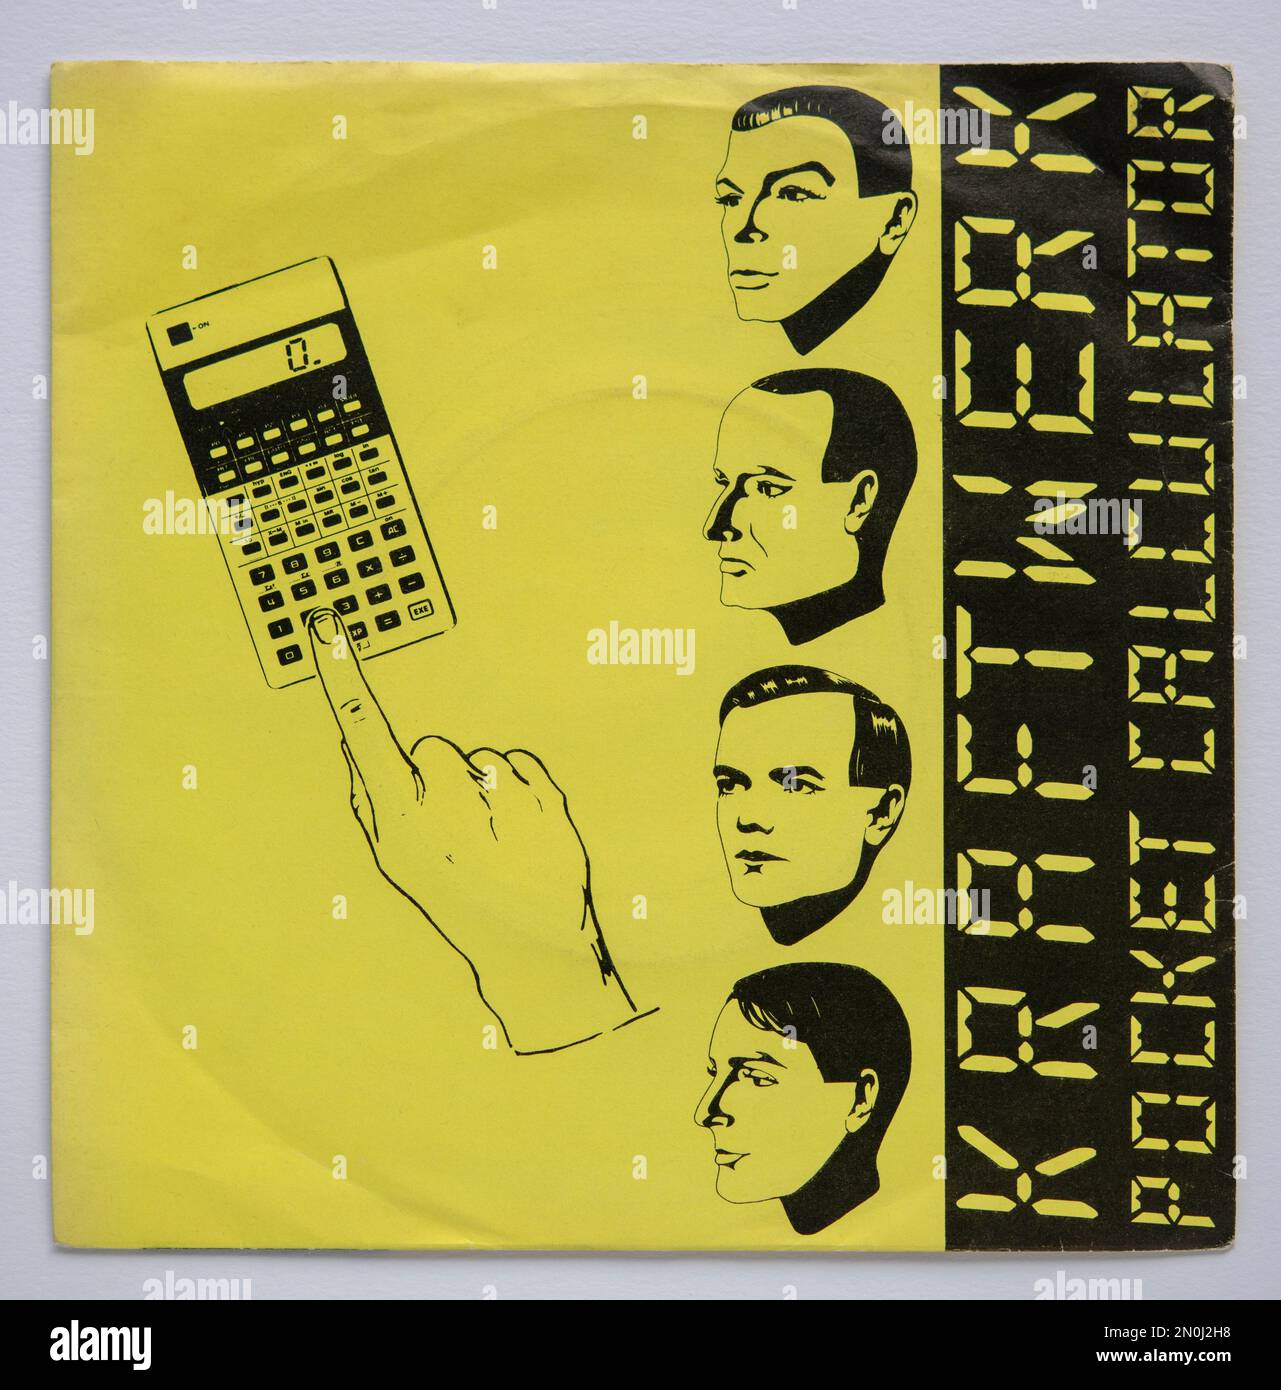 Copertina della versione in vinile da sette pollici di Pocket Calculator di Kraftwerk, rilasciata nel 1981. Foto Stock